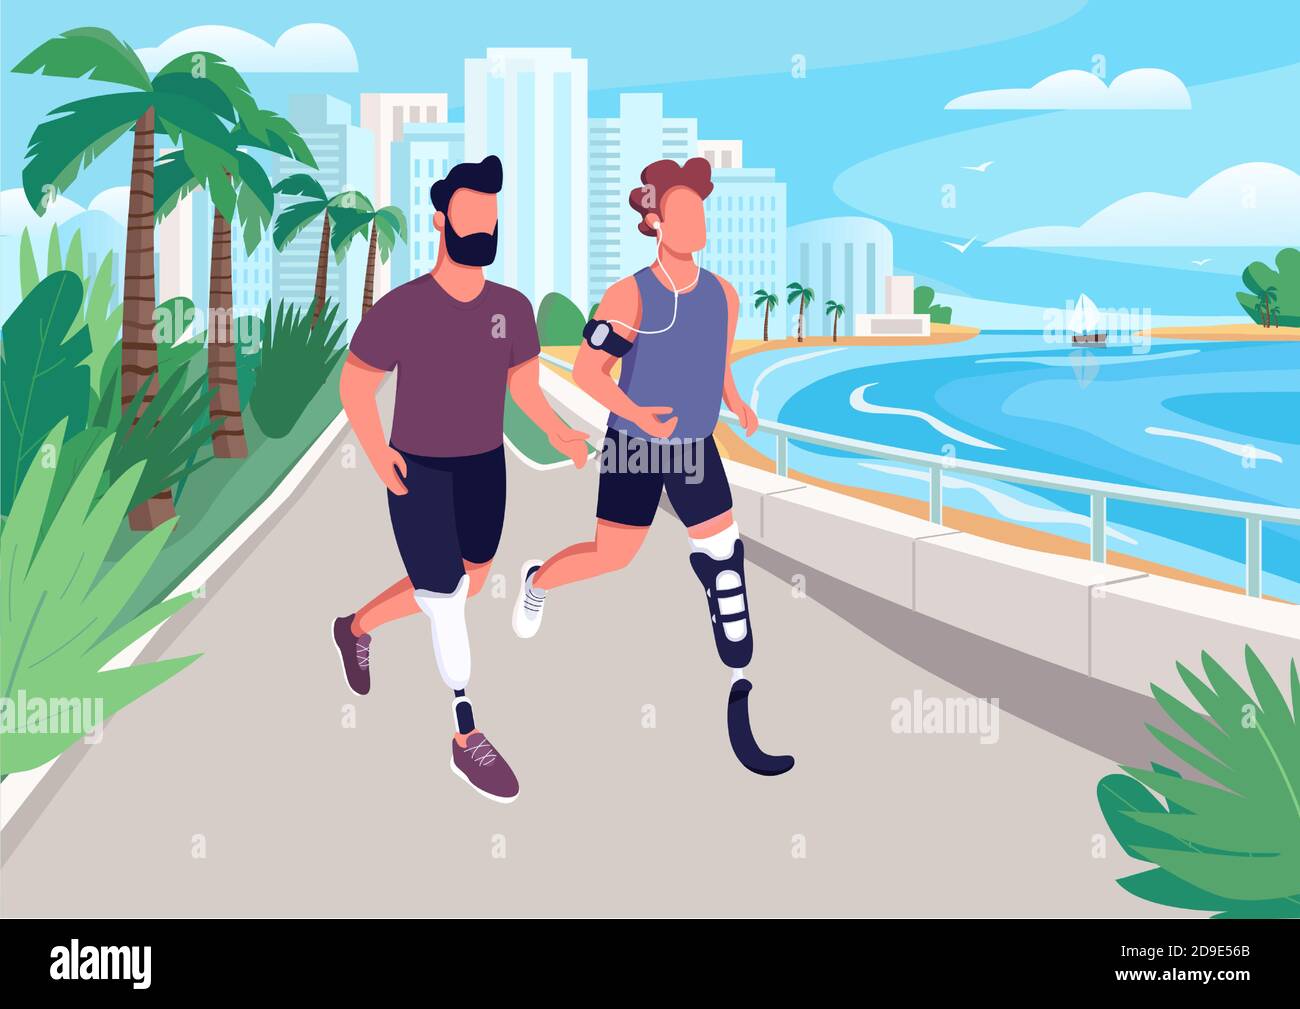 Les gens font du jogging sur l'illustration vectorielle de couleur plate en bord de mer Illustration de Vecteur